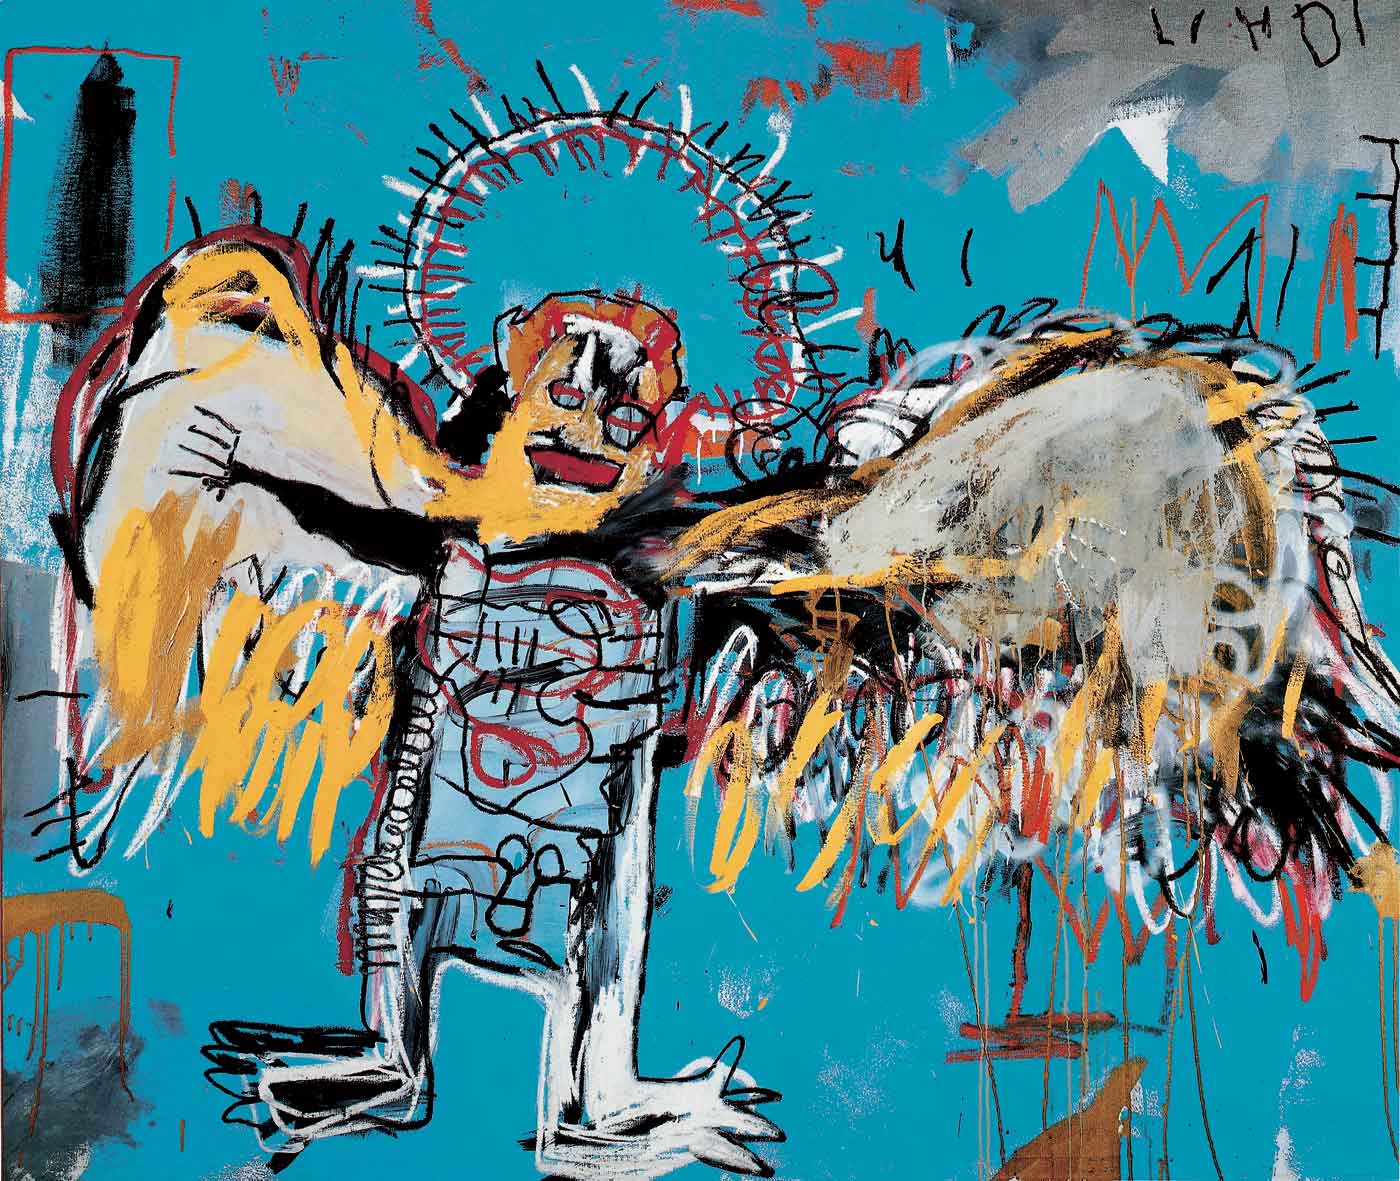 Ohne Titel (Gefallener Engel) by Jean-Michel Basquiat - 1981 - 66 x 78 in. Private Sammlung